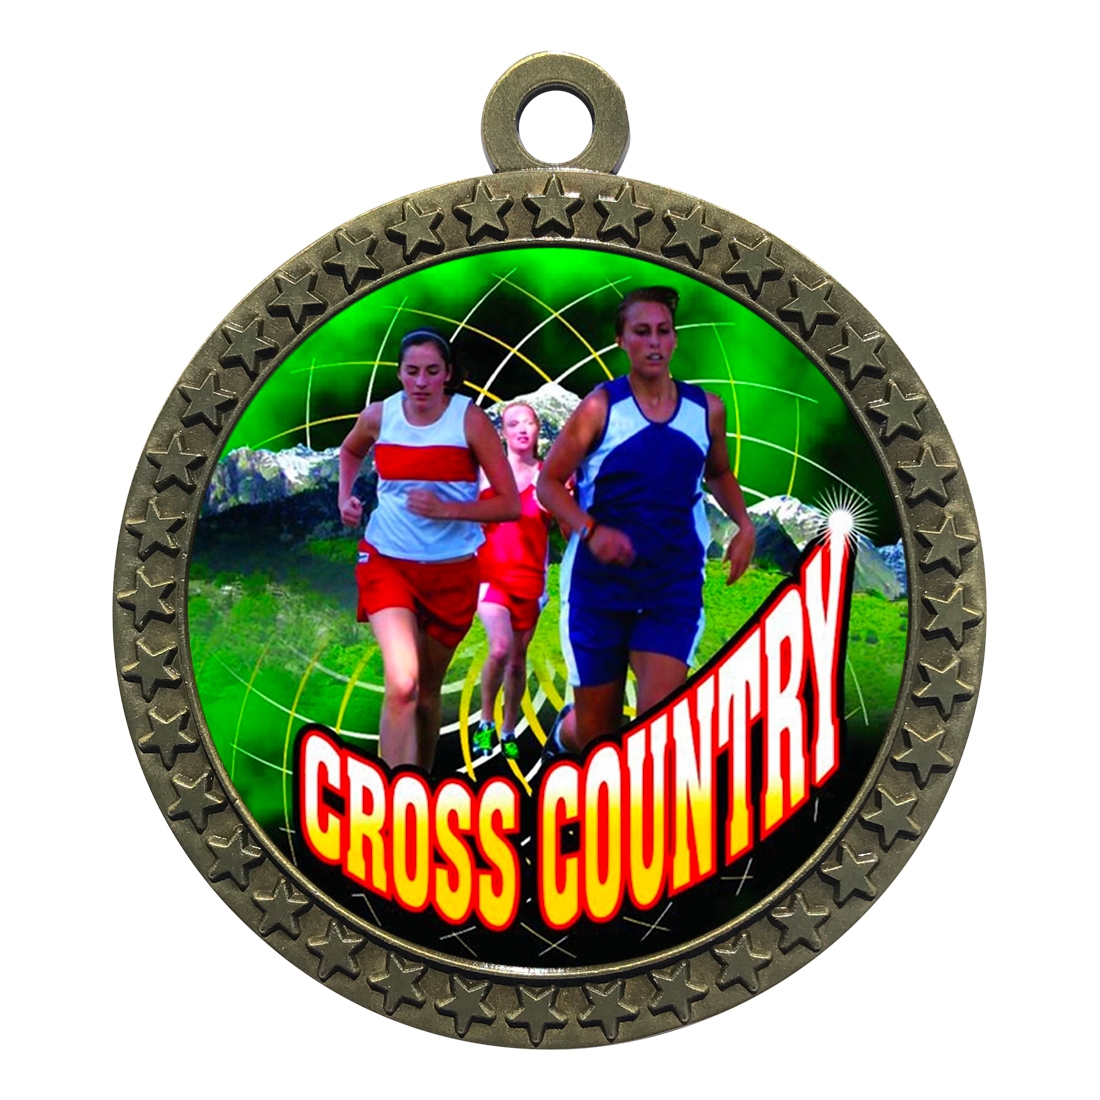 2-1/2" Female Cross Country Medal